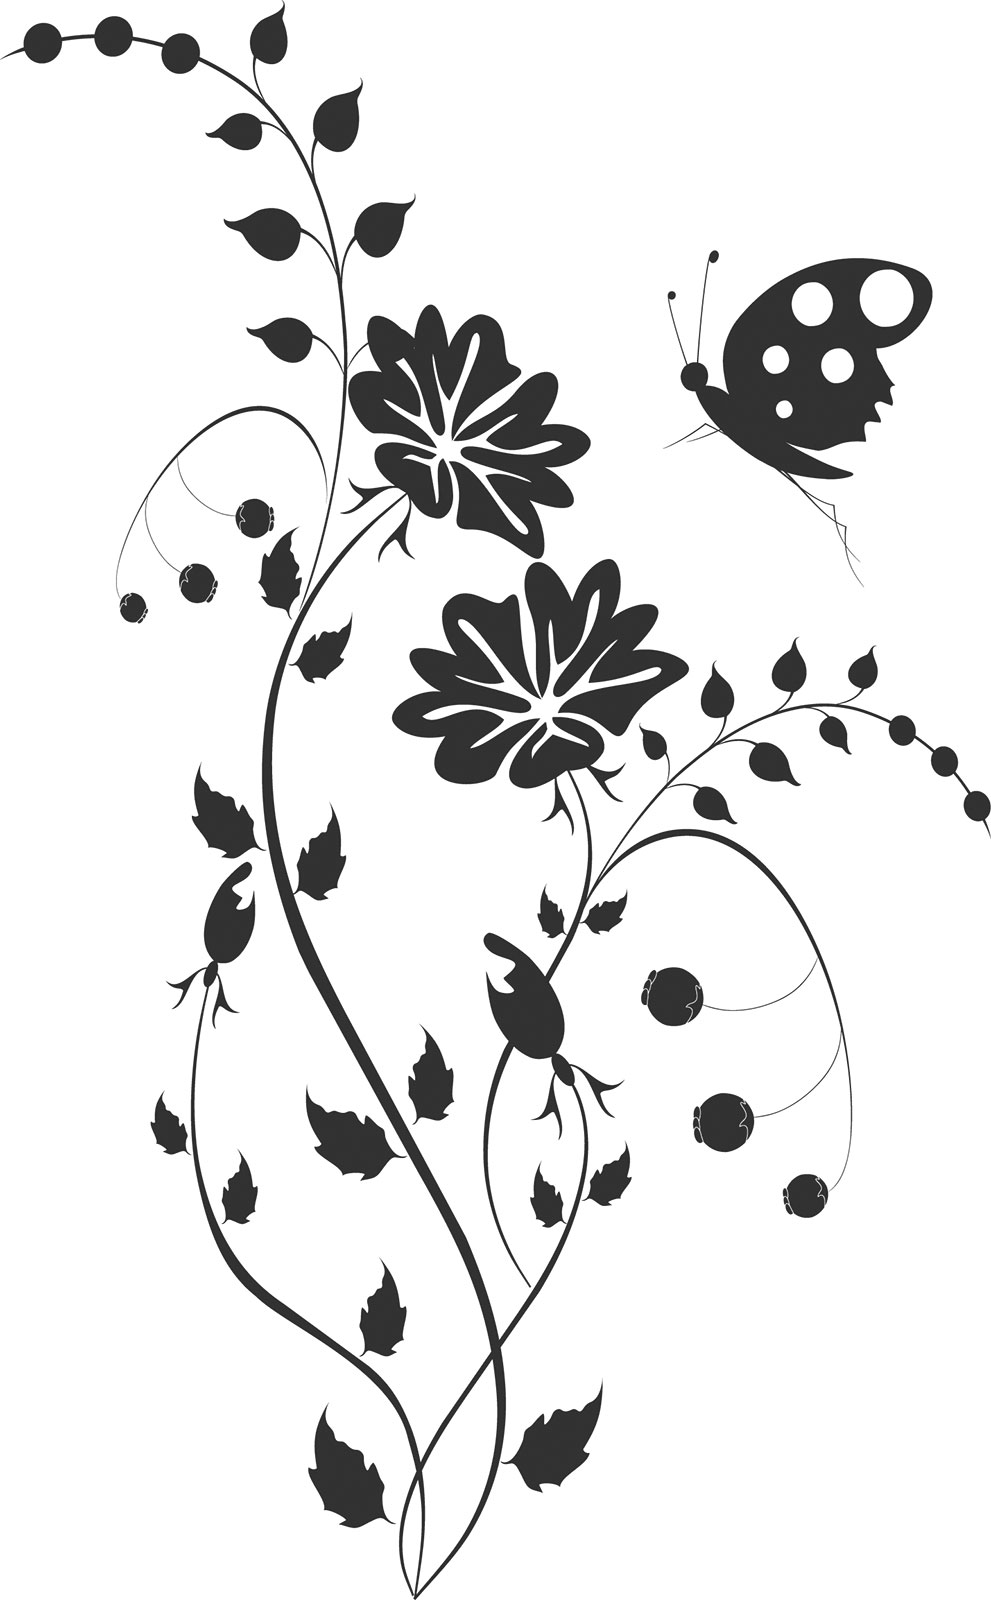 ポップでかわいい花のイラスト フリー素材 No 1370 白黒 茎葉 蝶